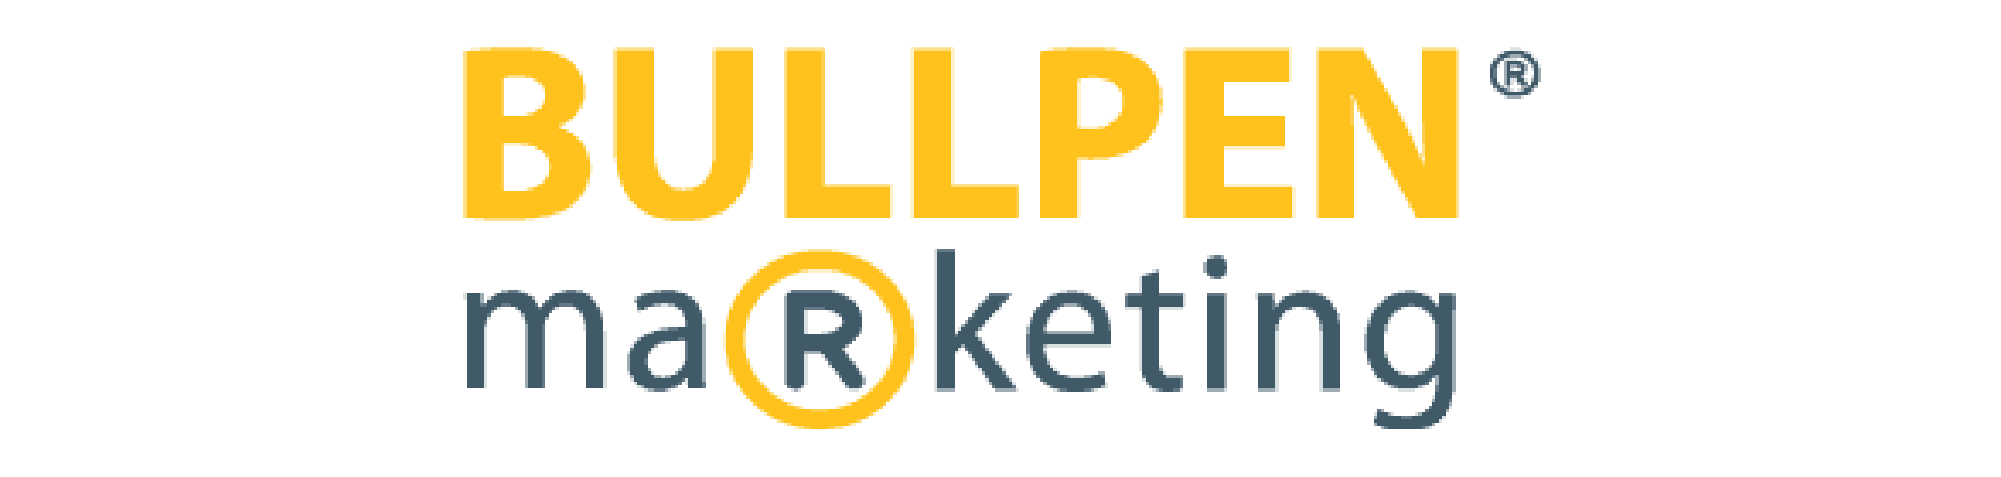 Bullpen Marketing logo